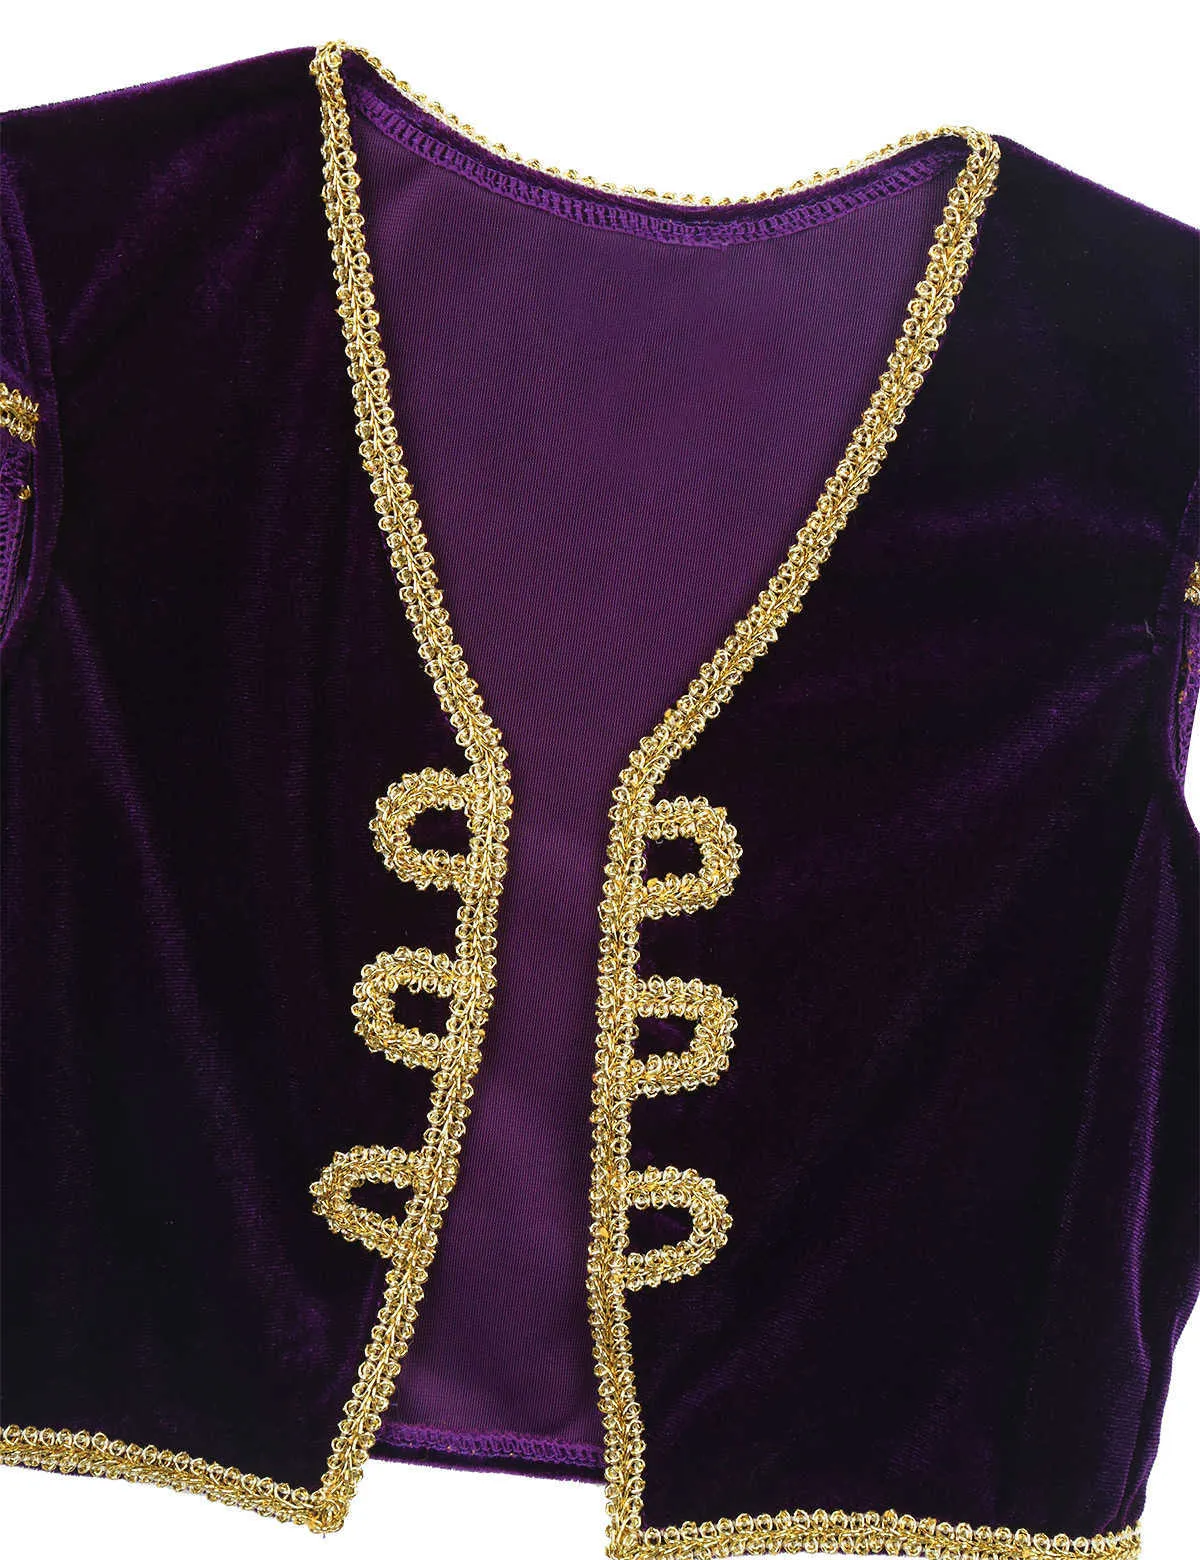 Kinder Jungen Kinder Arabische Prinz Lampe Cosplay Kostüme Cap Sleeves Weste Weste mit Hosen Set für Halloween -Partys Kleider Q0910